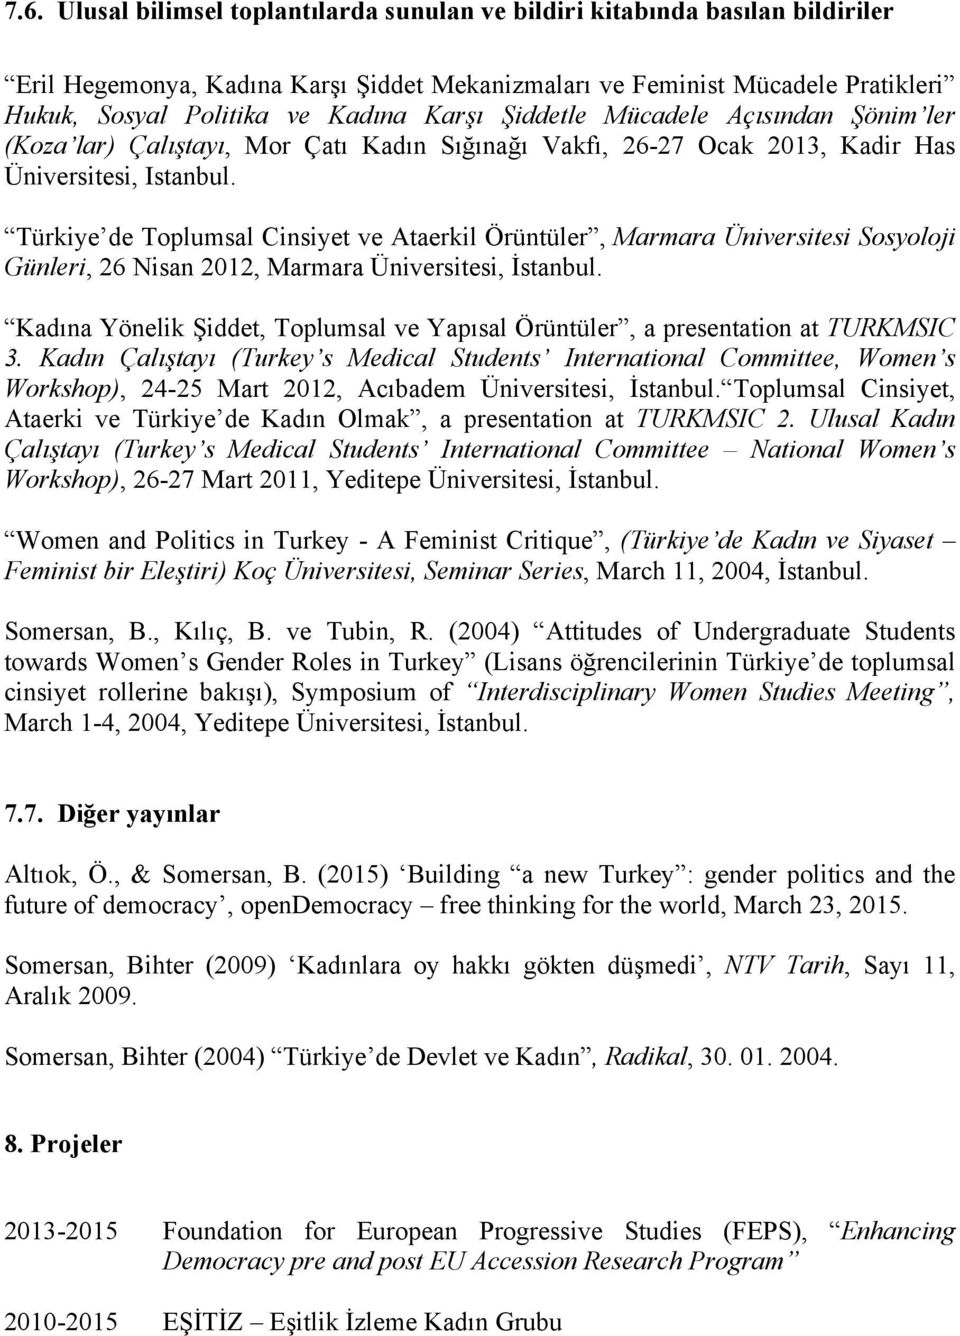 Türkiye de Toplumsal Cinsiyet ve Ataerkil Örüntüler, Marmara Üniversitesi Sosyoloji Günleri, 26 Nisan 2012, Marmara Üniversitesi, İstanbul.